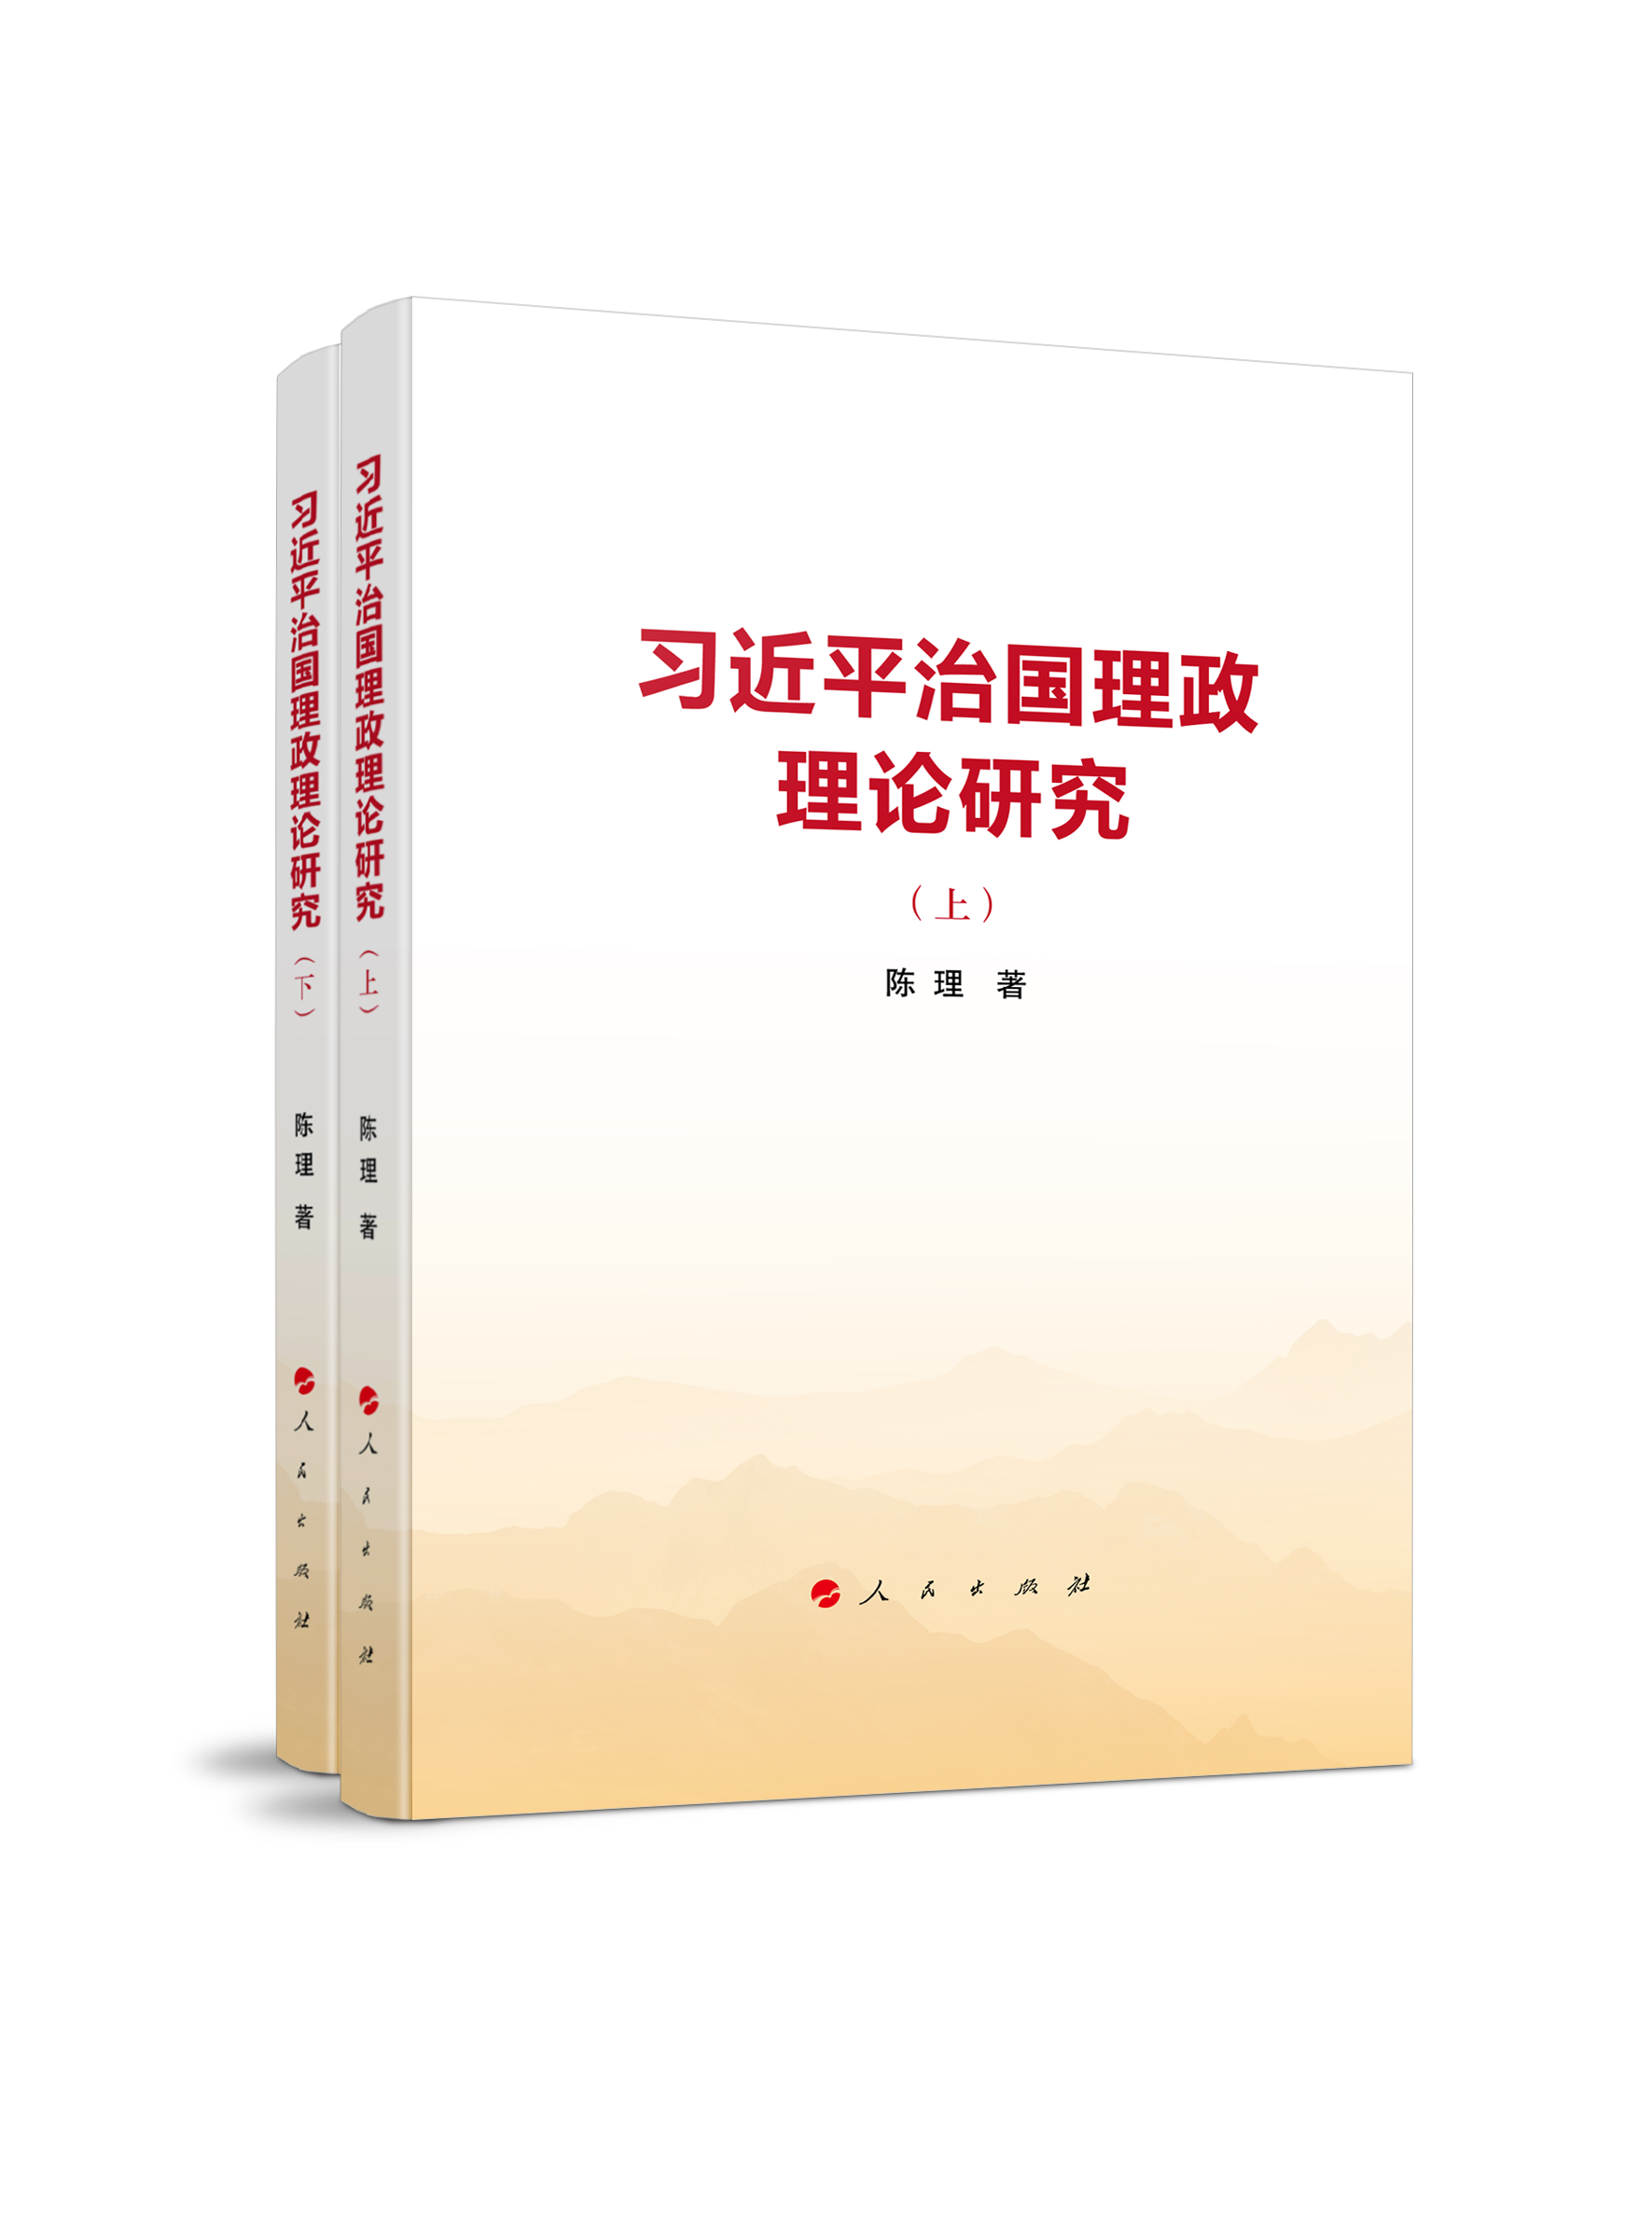 《习近平治国理政理论研究》出版发行